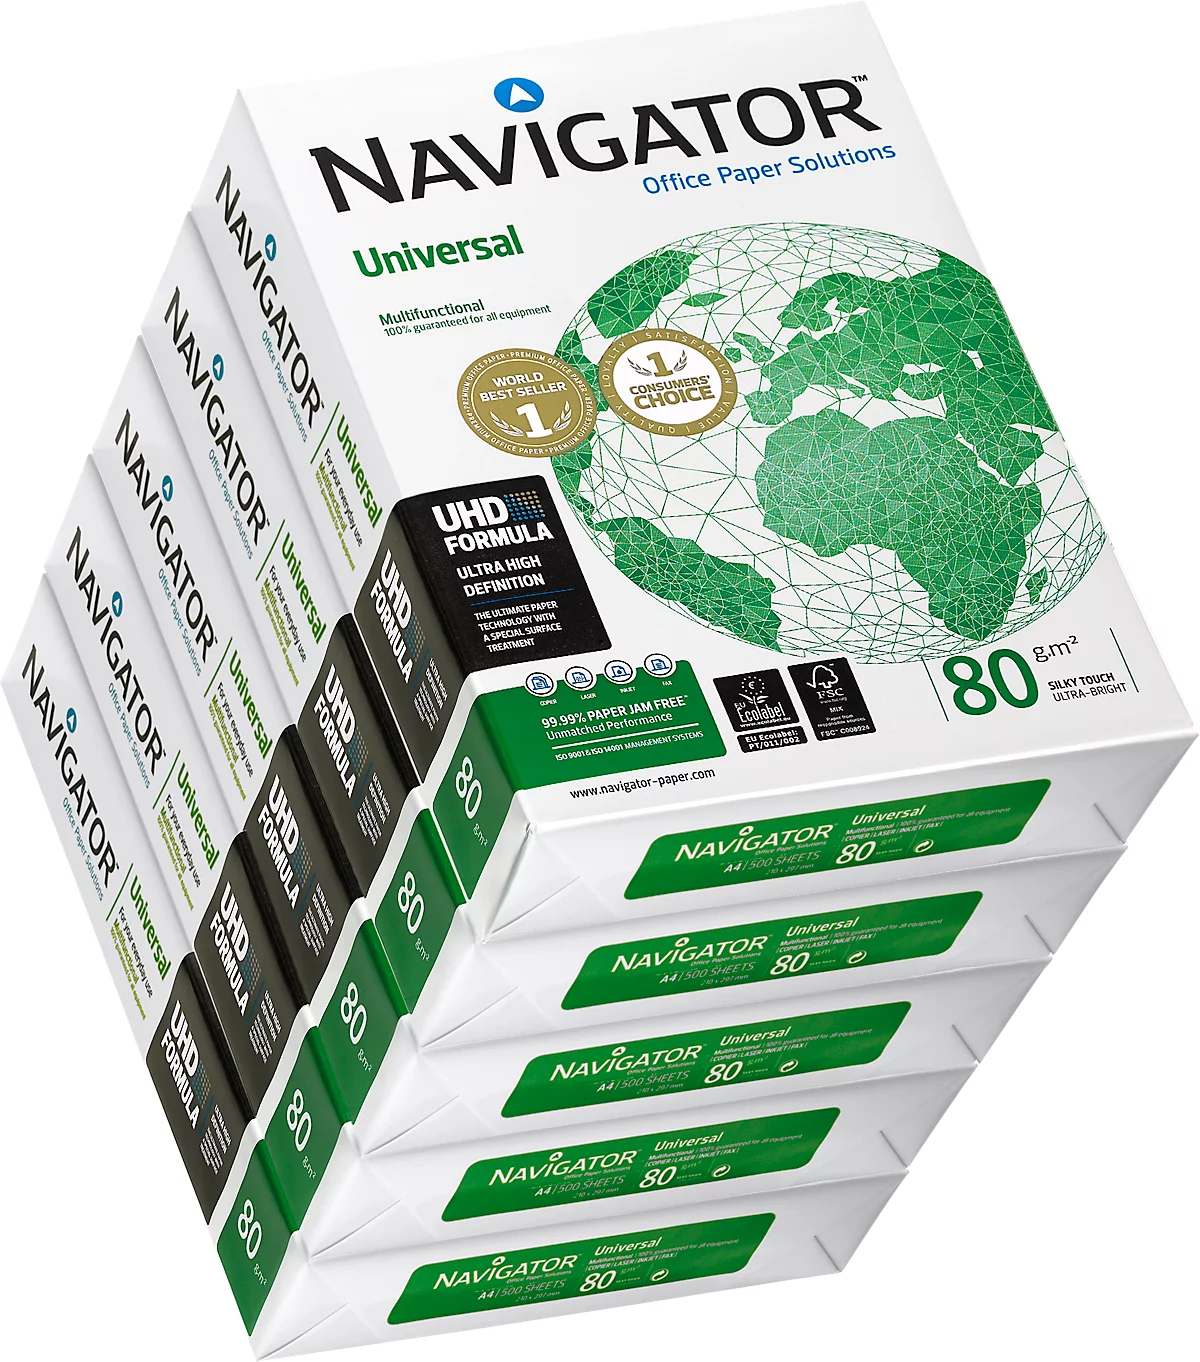 Papier A4 blanc 80 g Navigator Universal - Ramette de 500 feuilles